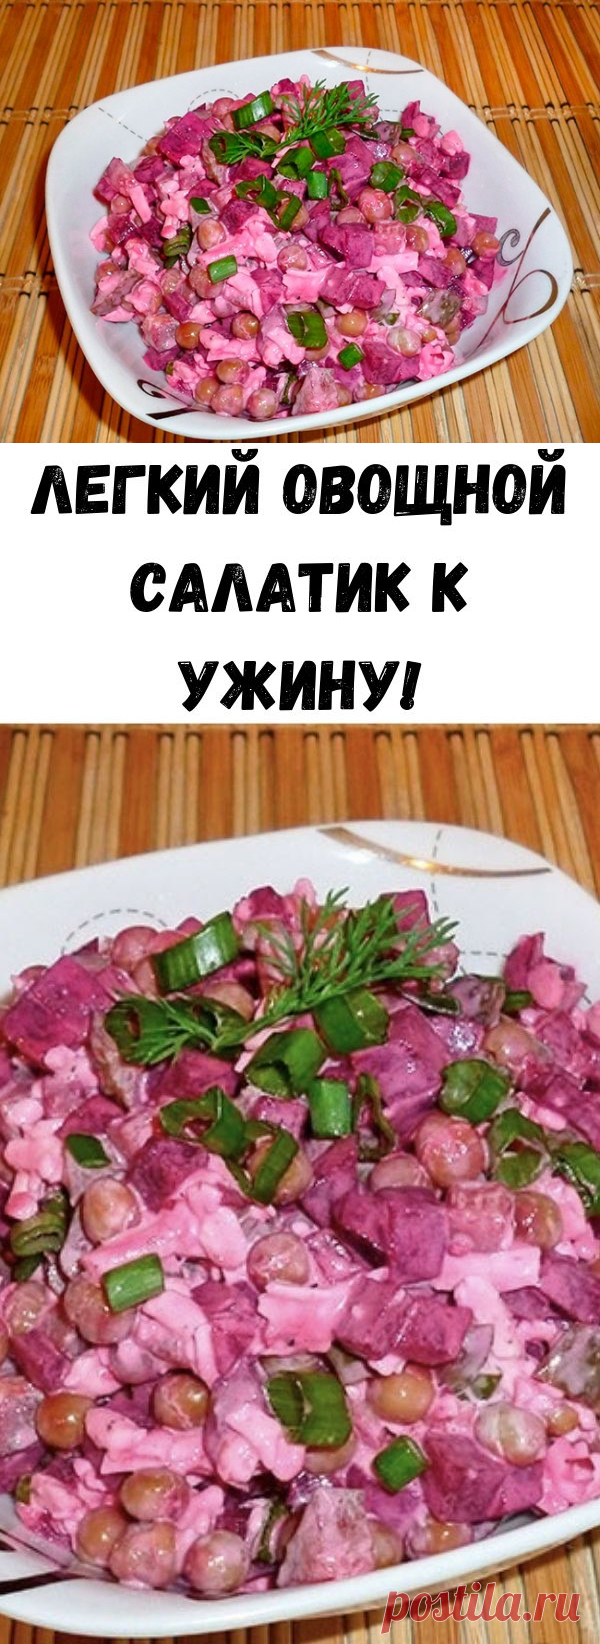 Легкий овощной салатик к ужину! - Счастливые заметки